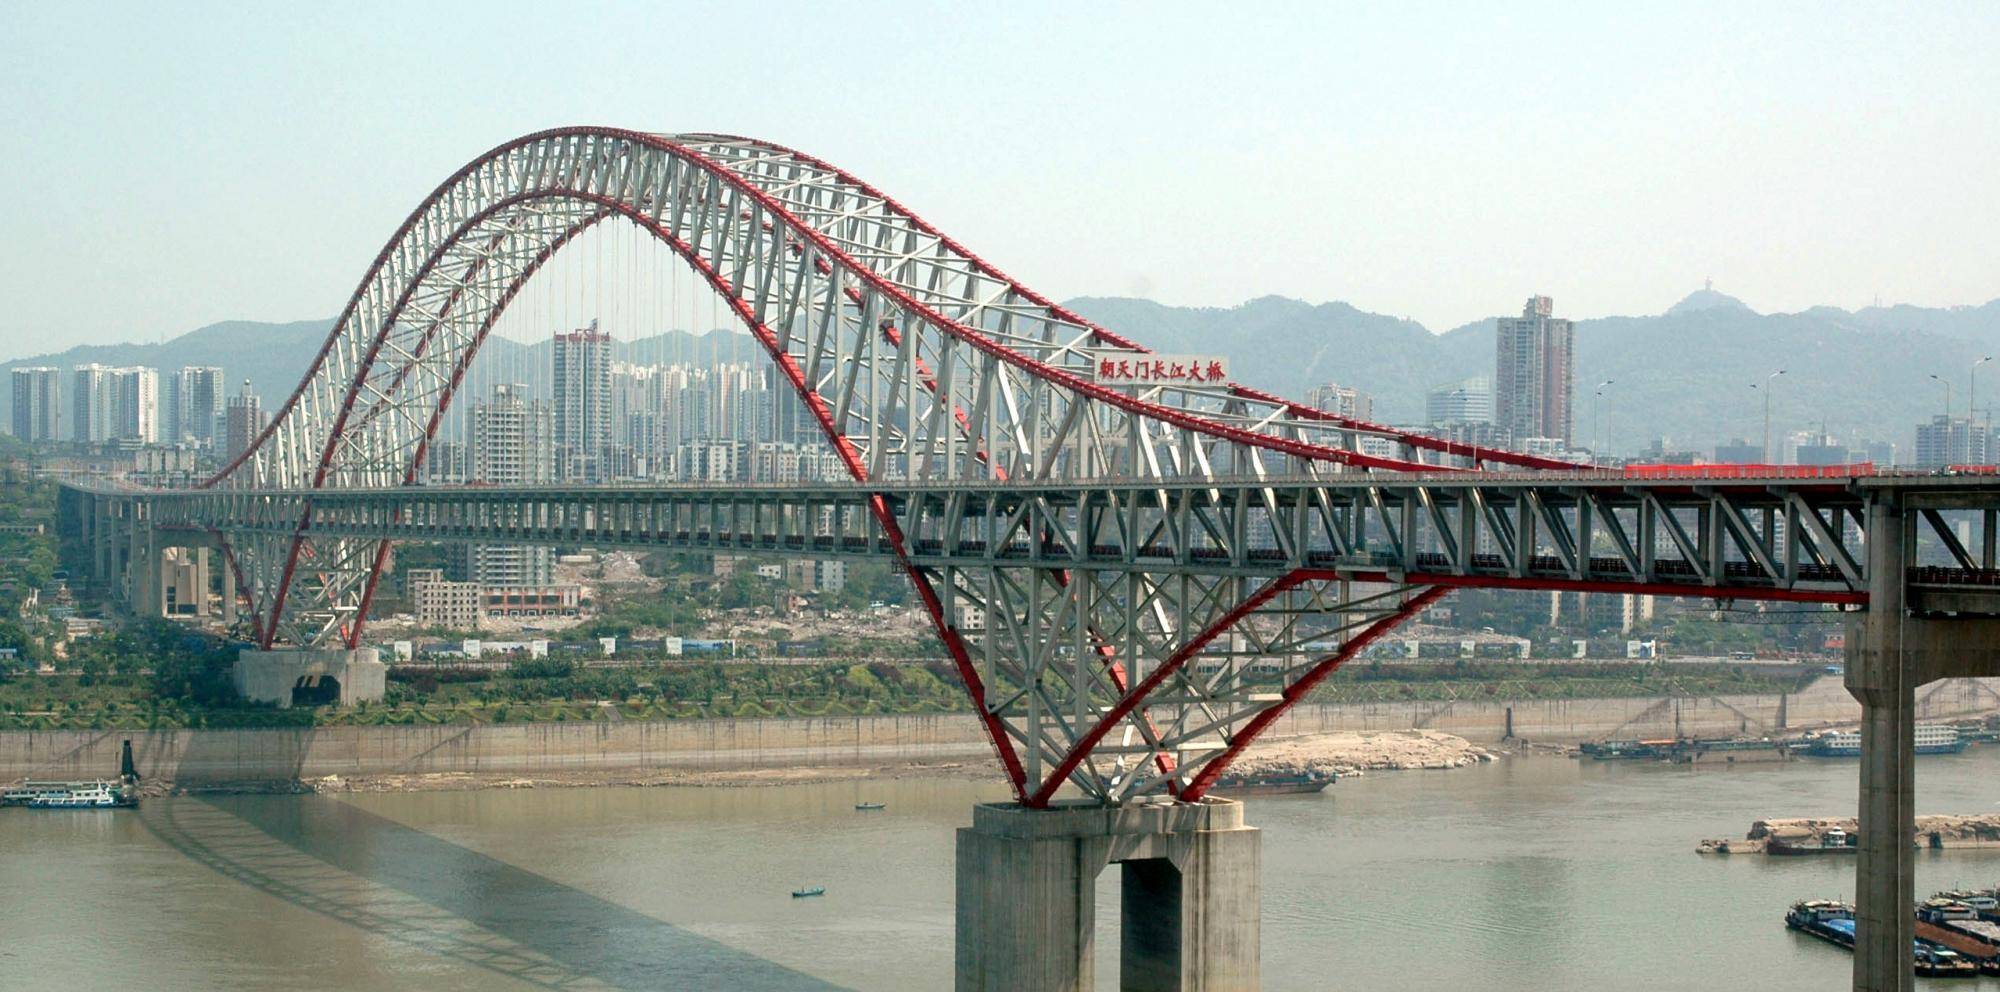 重庆打造的新跨江大桥,是公轨两用桥,下层跑地铁,长6300米